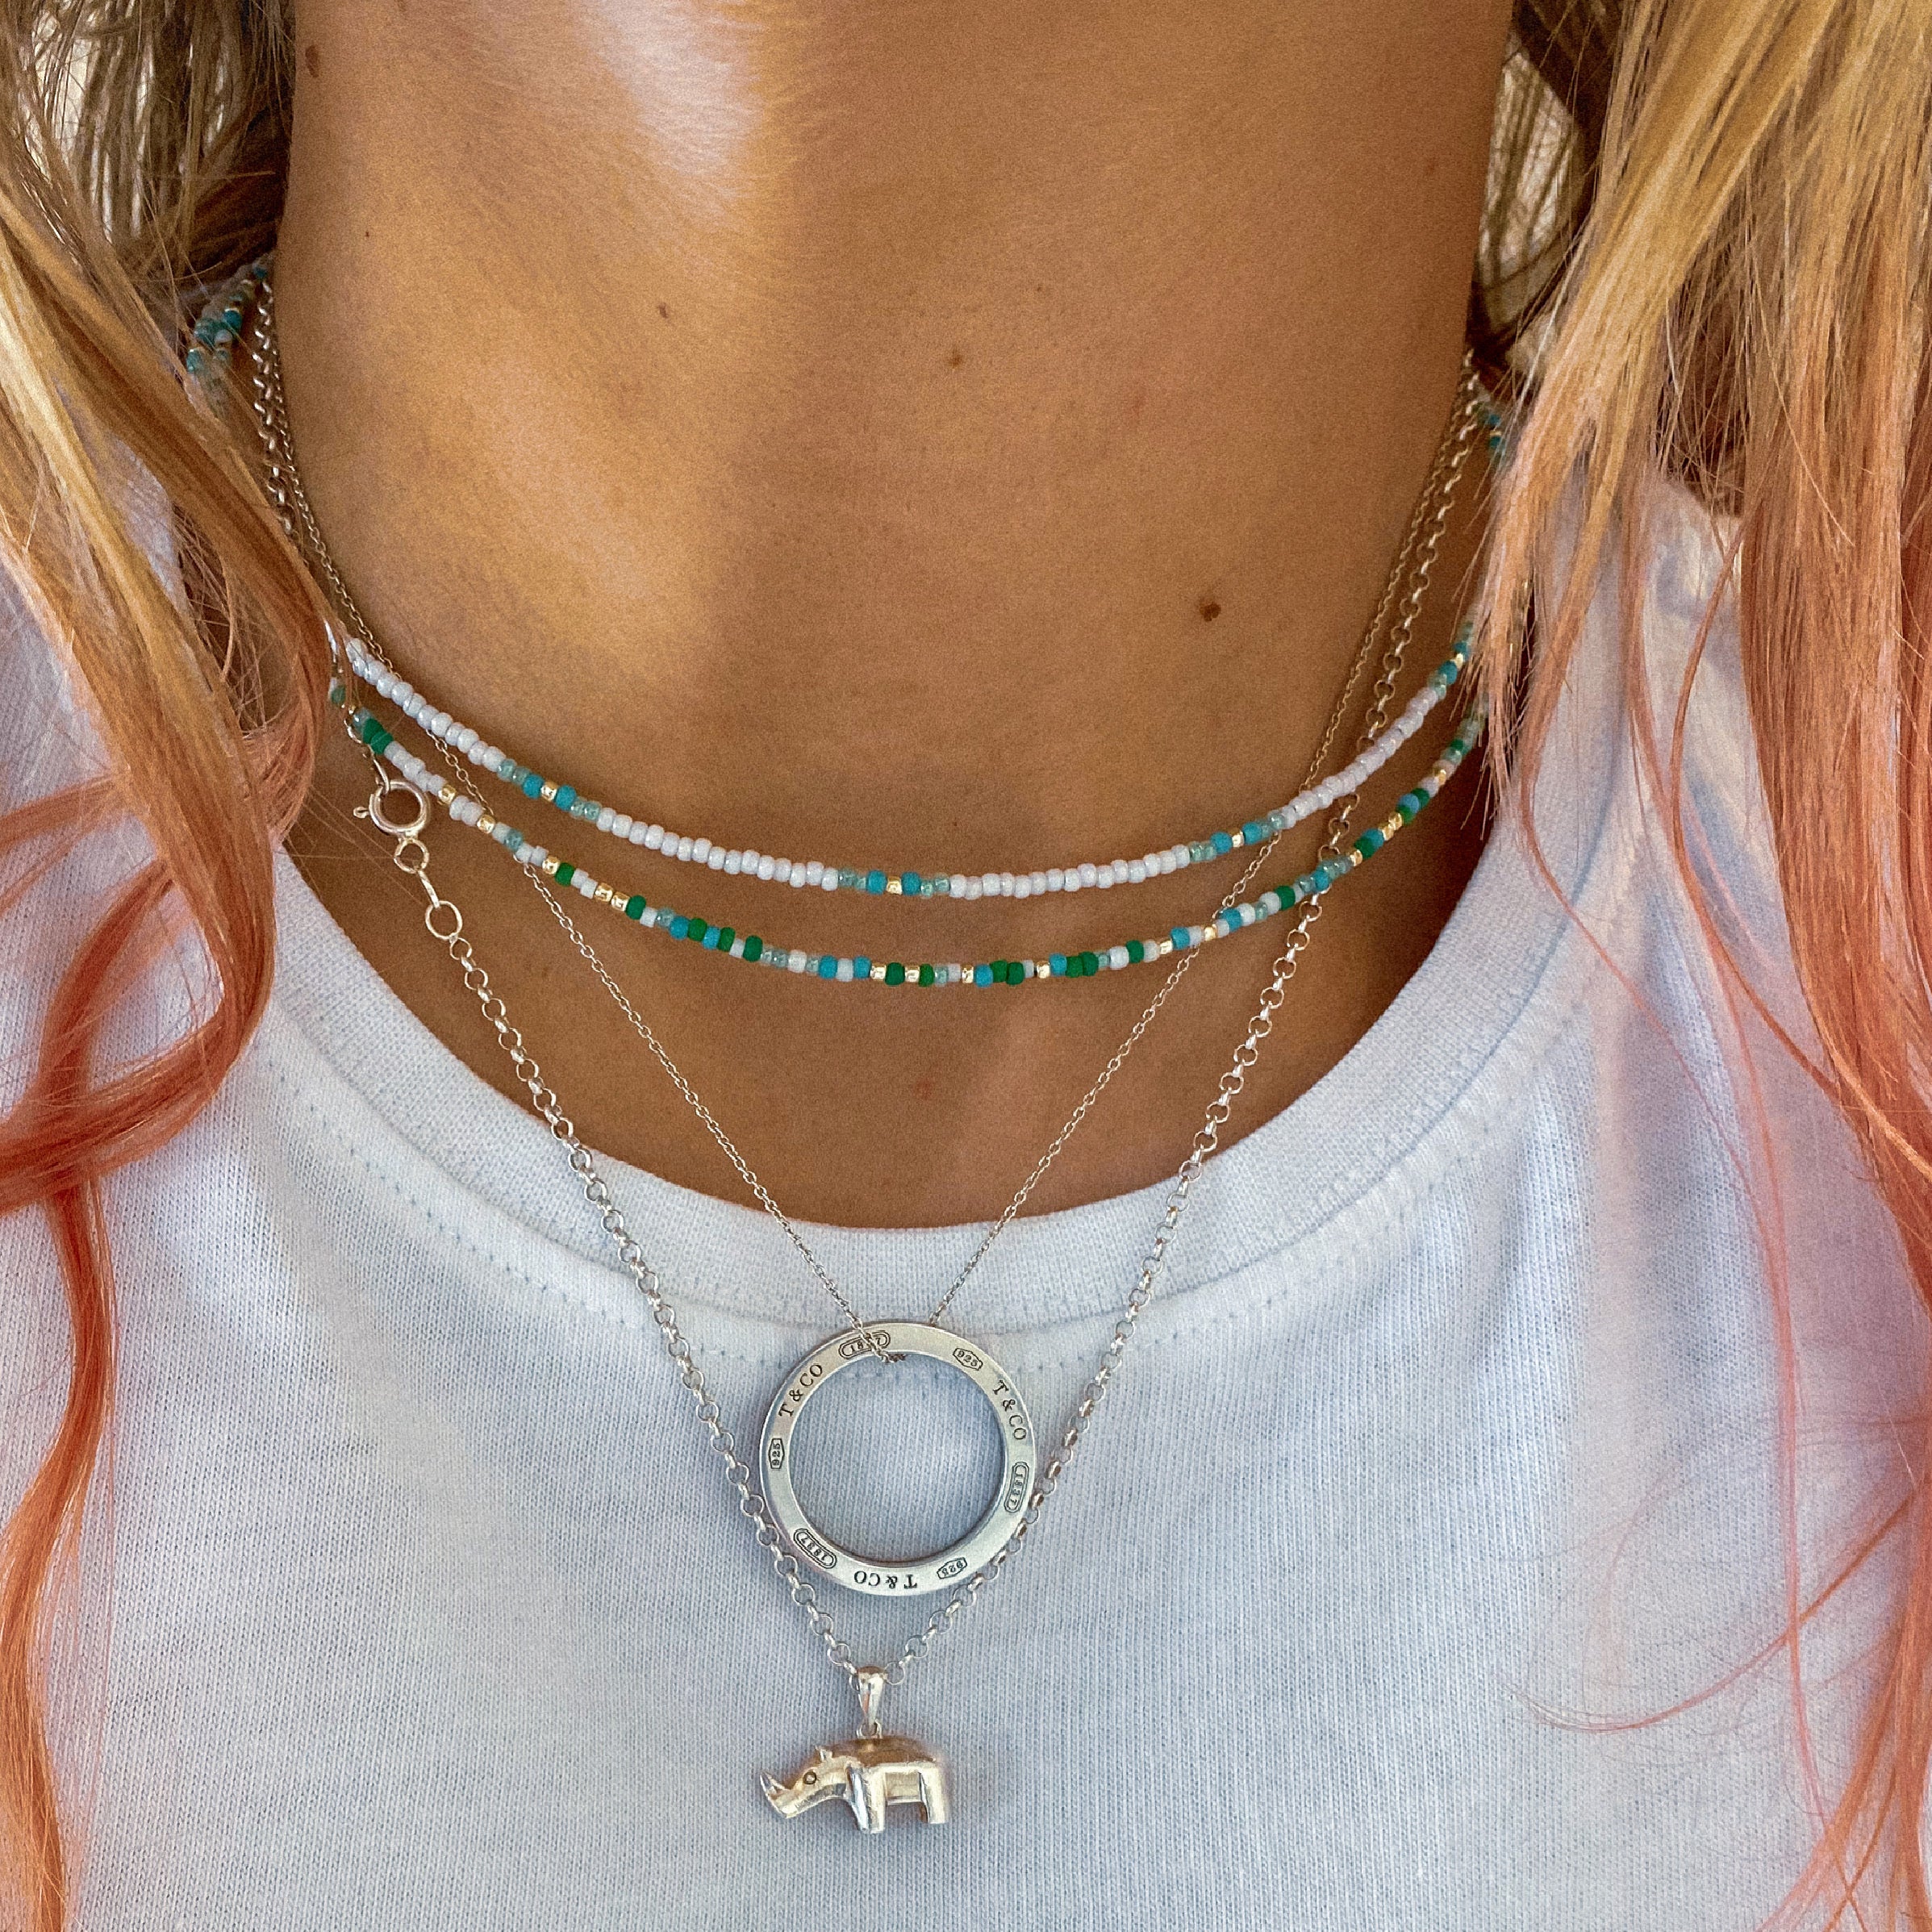 Necklaces & Bolo Ties: Navajo Silver Bead Necklace, c.1950-60